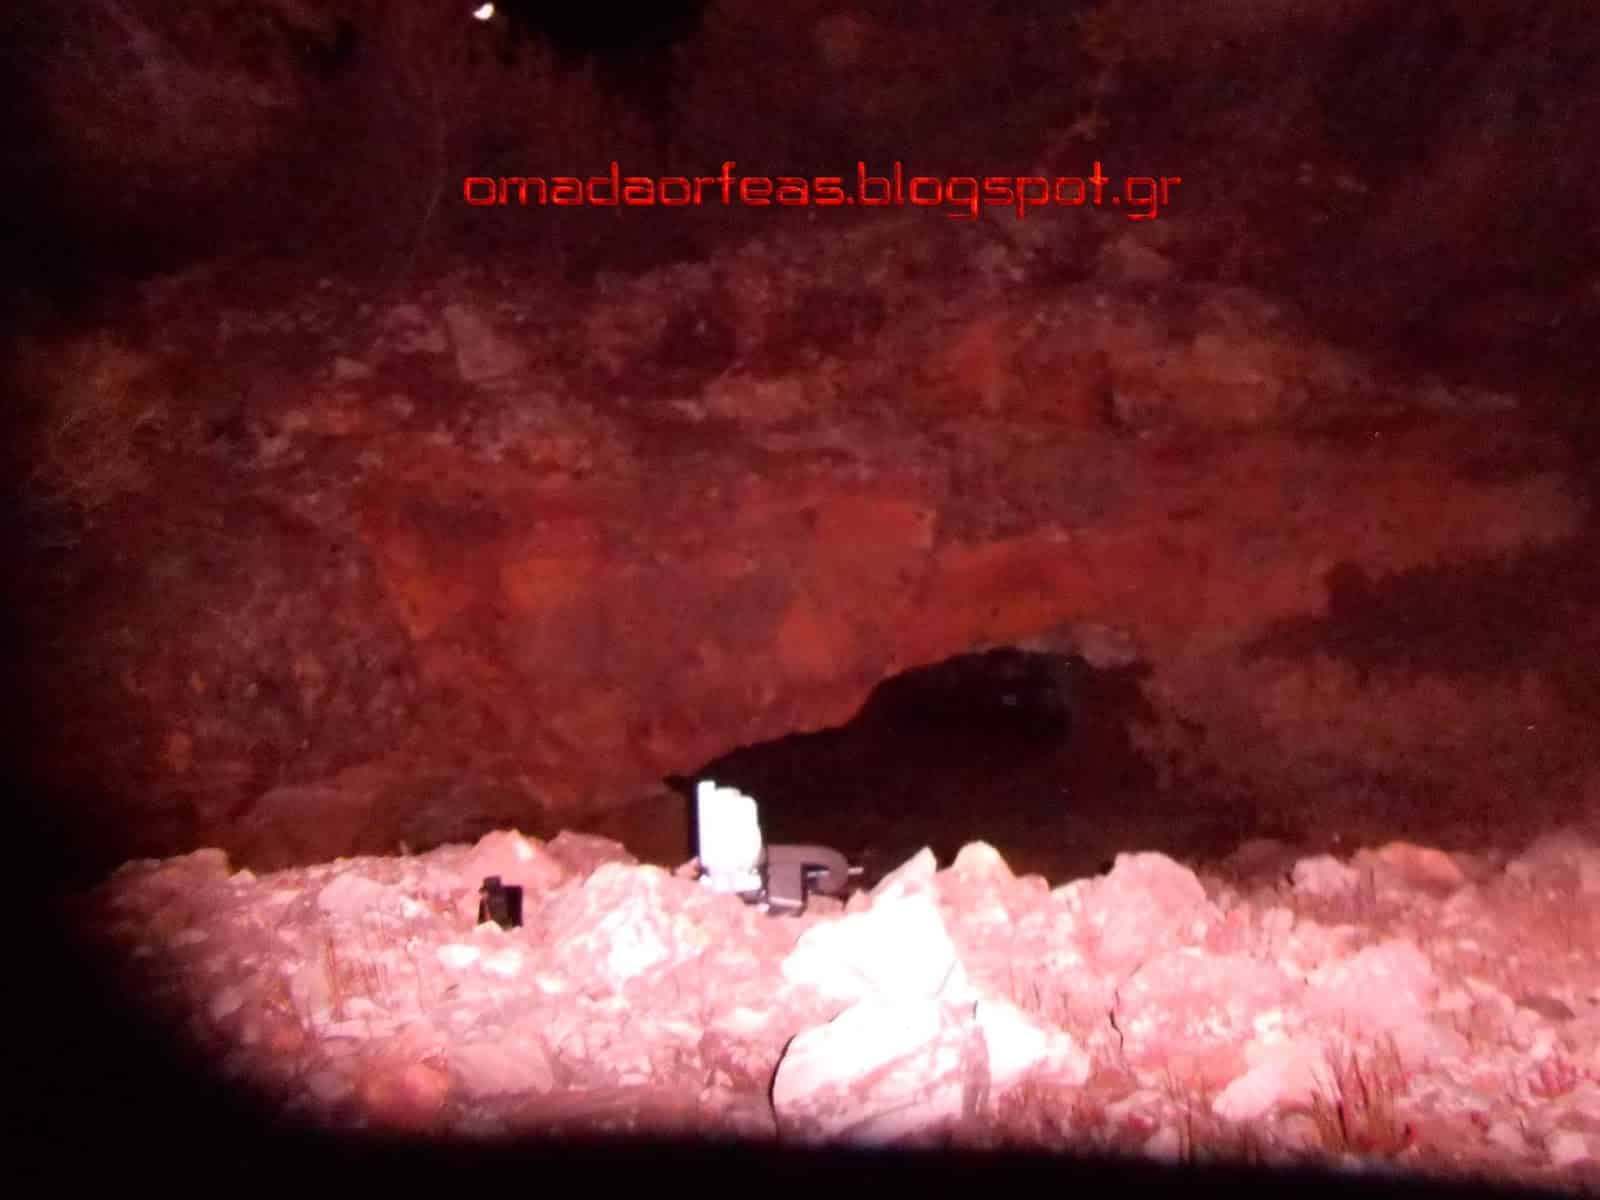 Καταγραφή Απόκοσμης Οντότητας στις Στοές του Λαυρίου και Σπήλαιο Νταβέλη